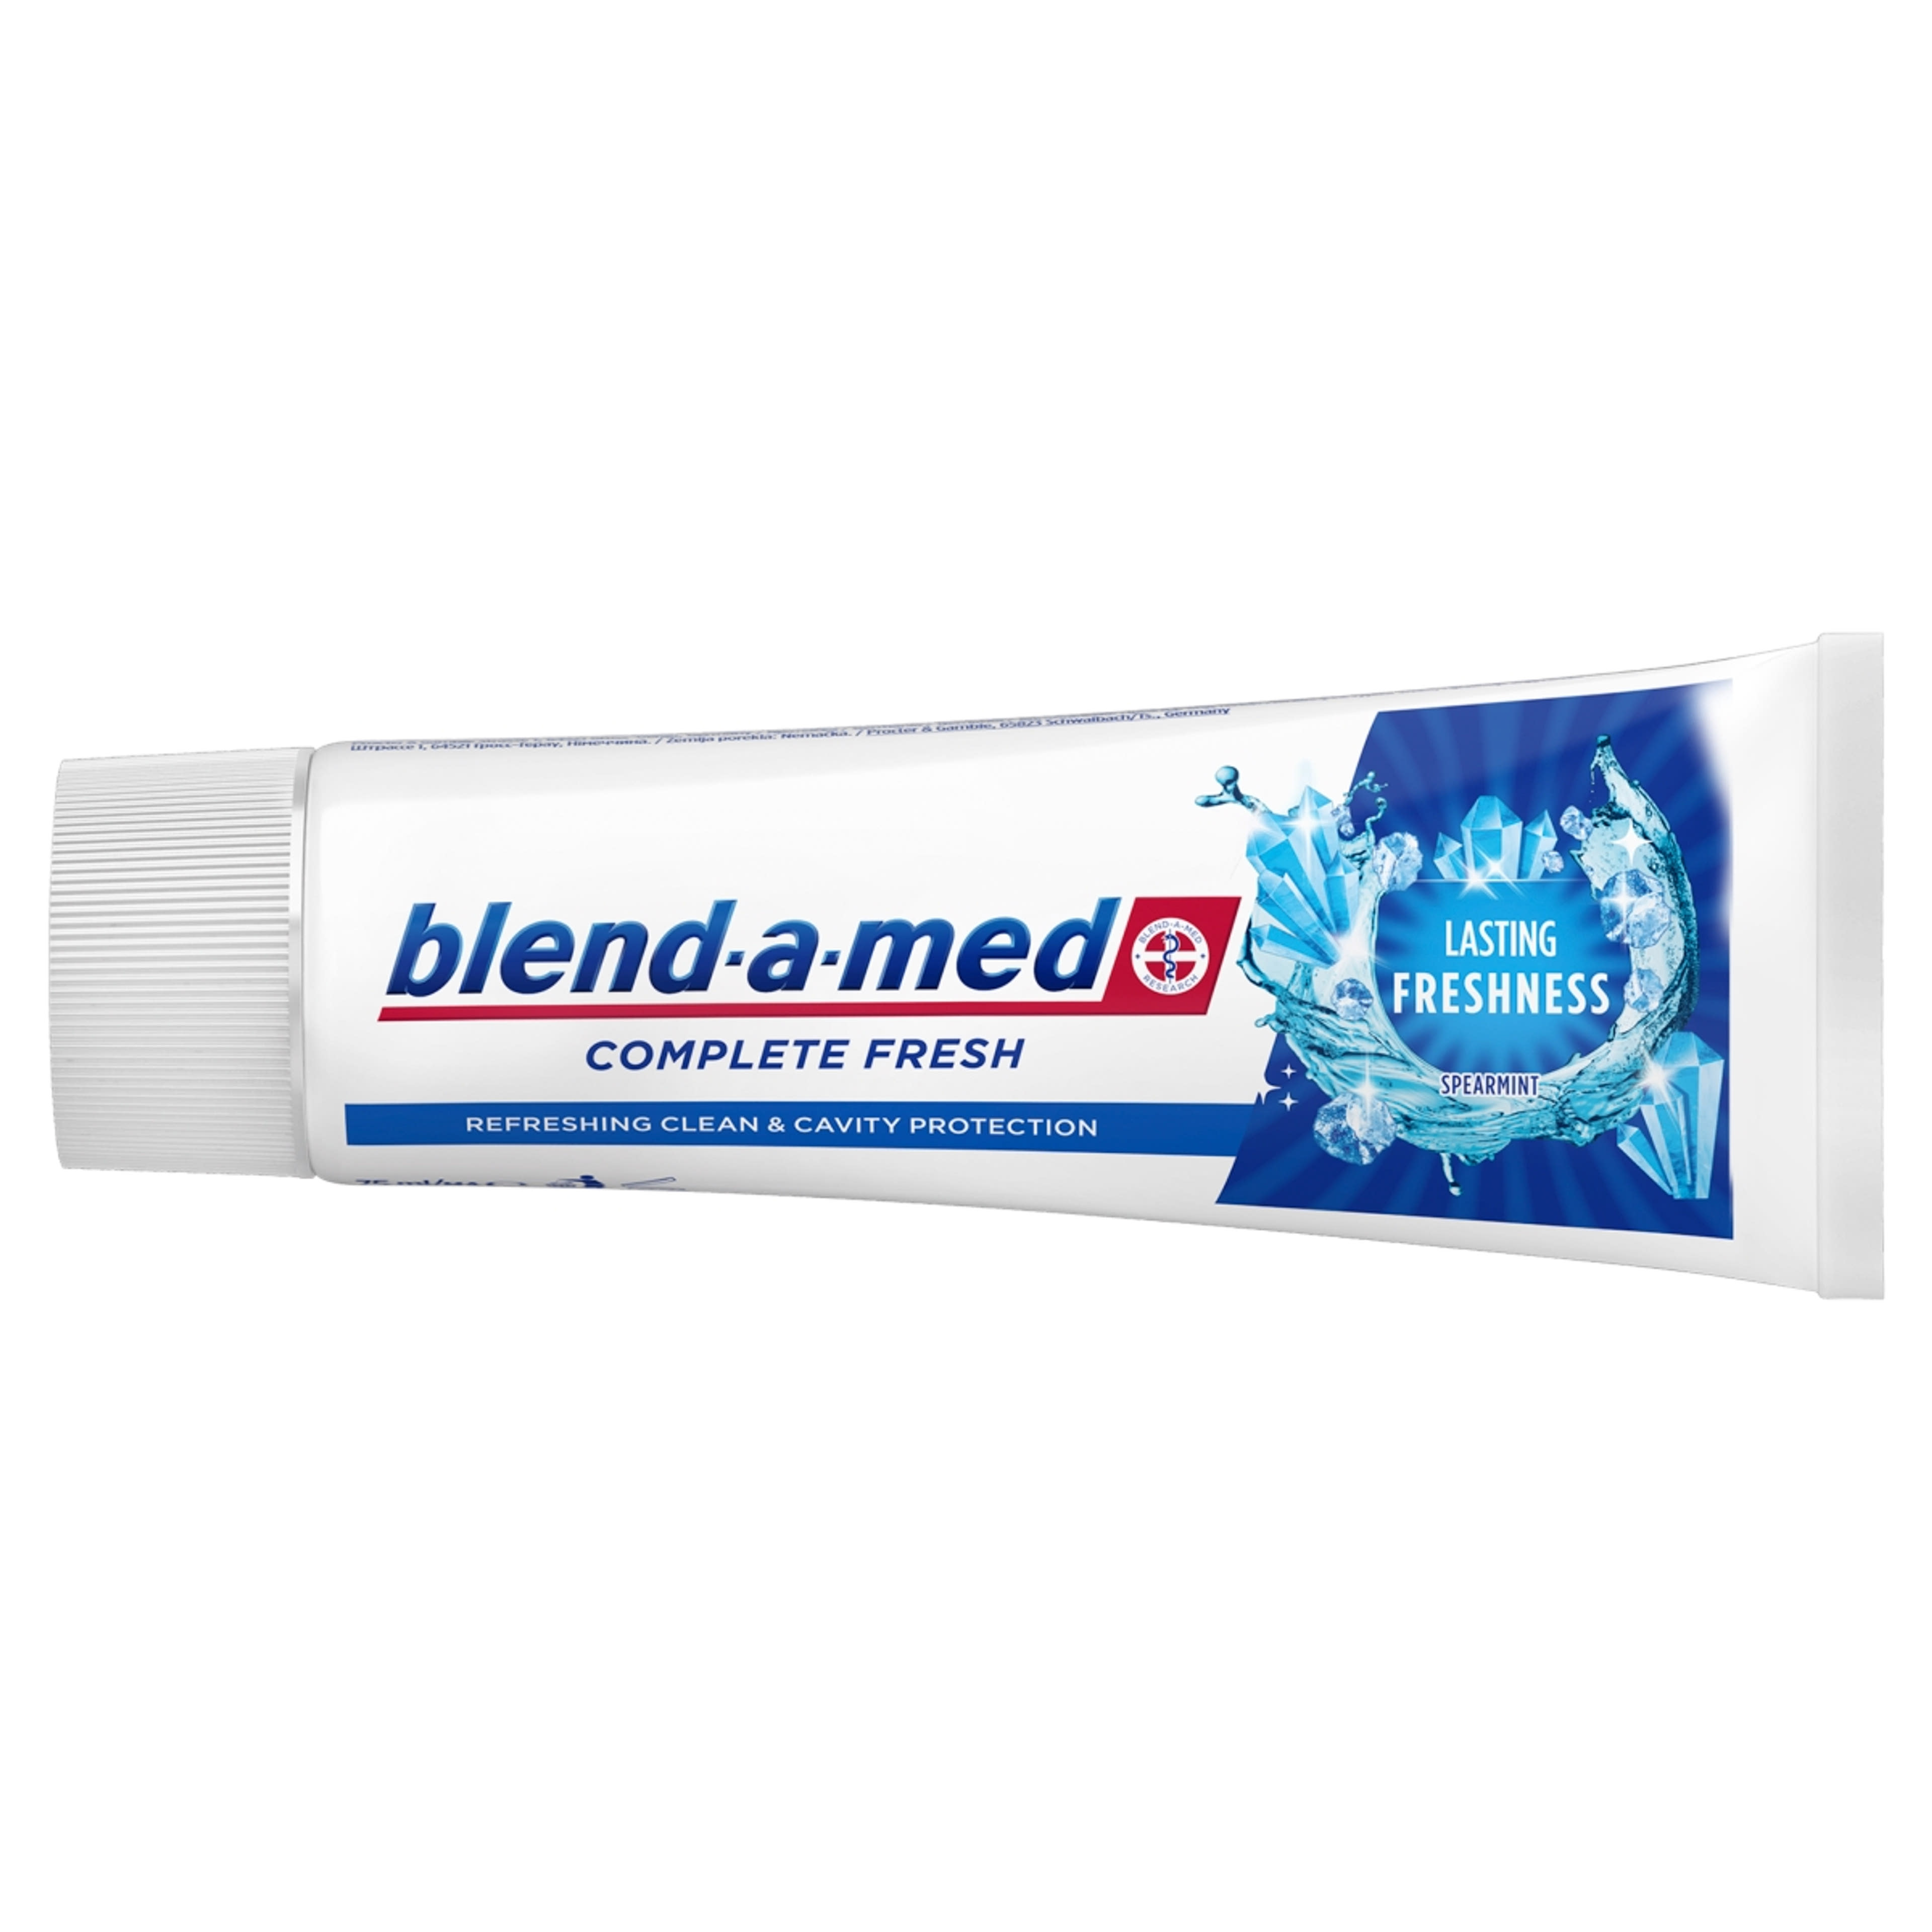 Blend-a-med Complete Fresh Lasting Freshness fogkrém - 75 ml-5